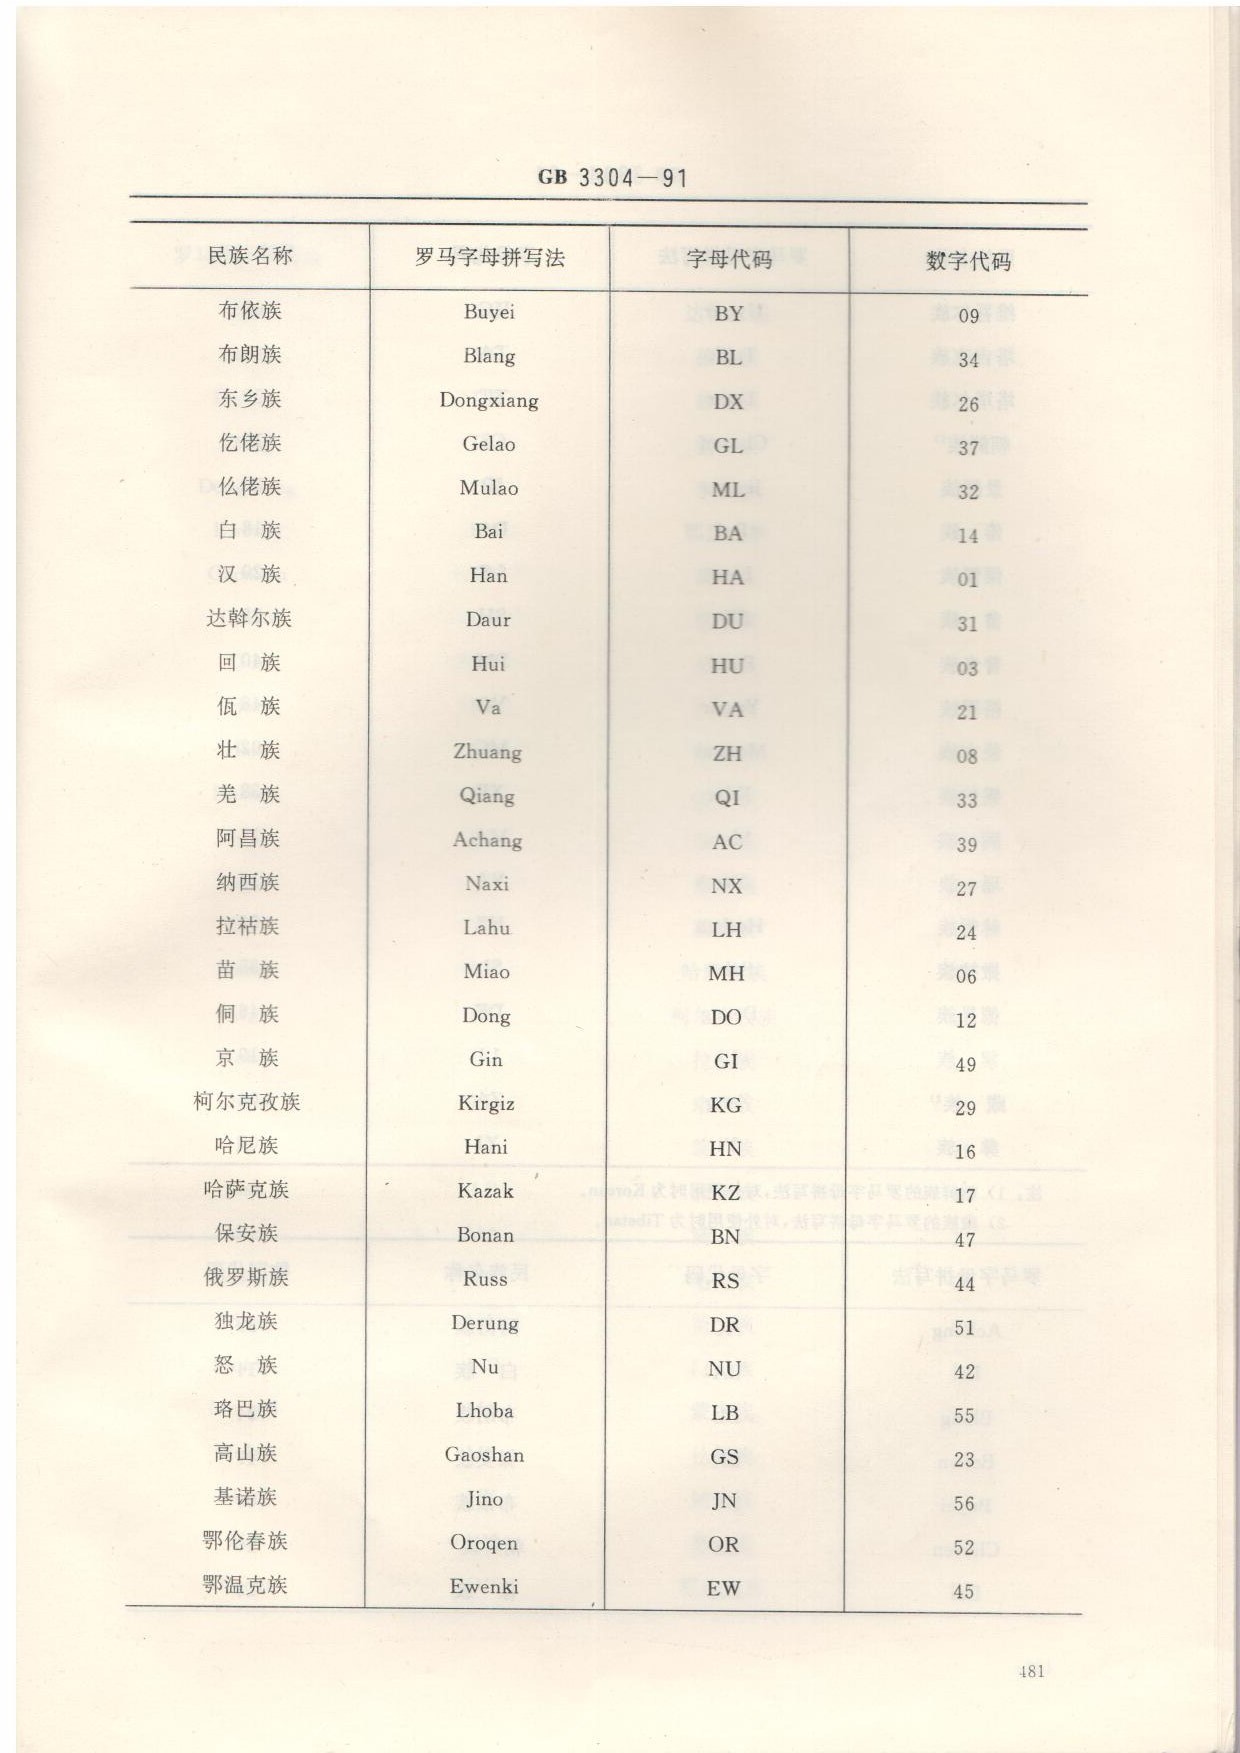 《中国各民族名称的罗马字母拼写法和代码》中对我国56个民族的数字代码排序的具体依据是什么？ - 知乎